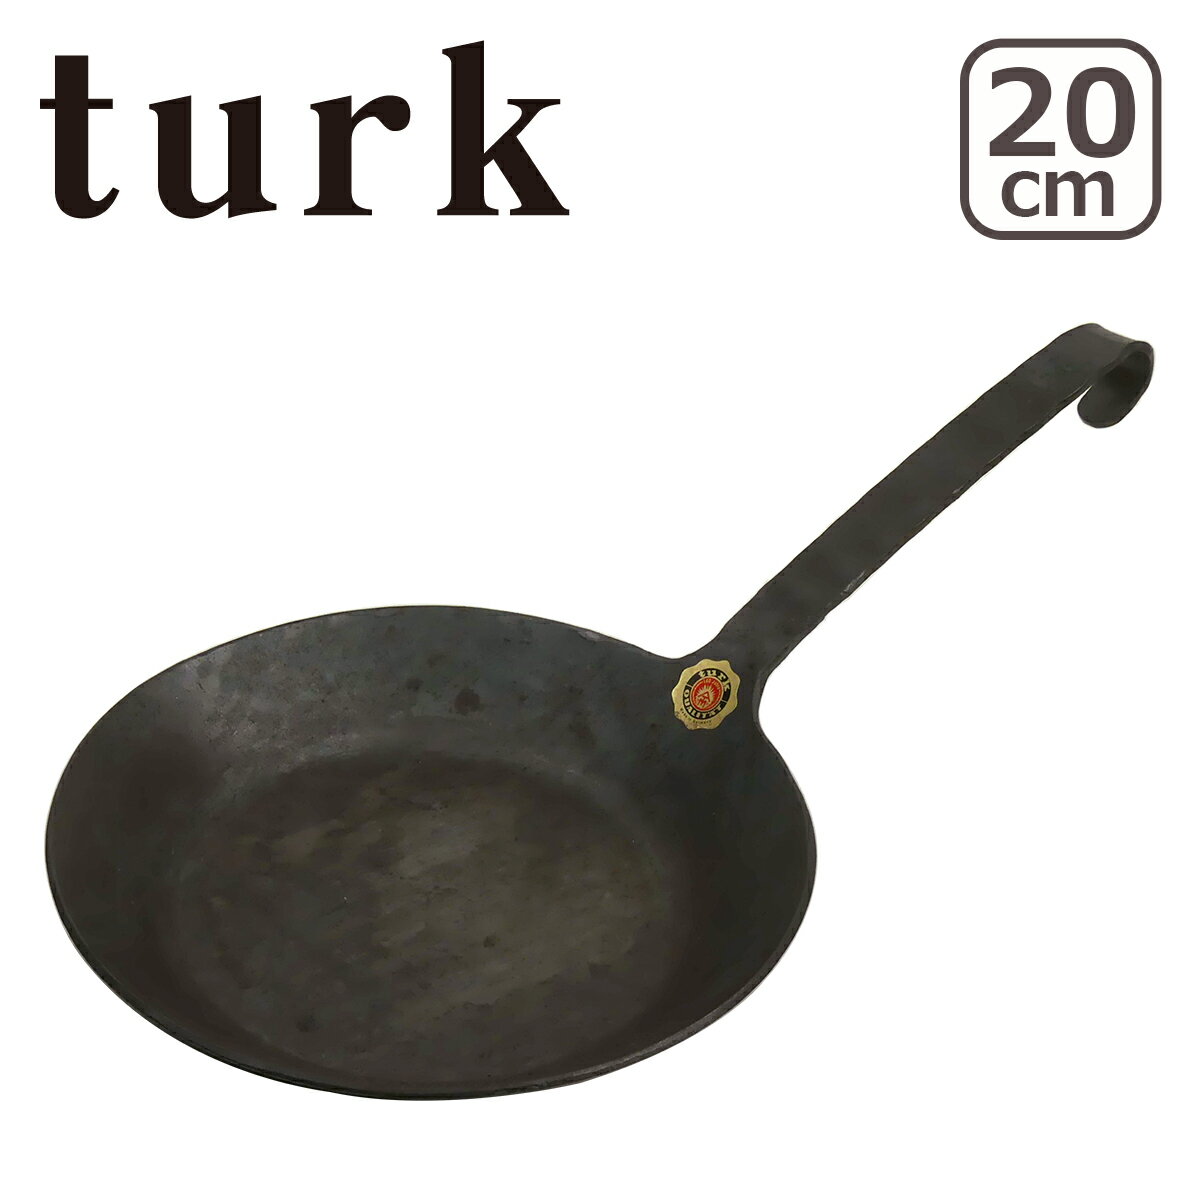 ターク フライパン クラシック 20cm 65520 turk Classic Frying pan